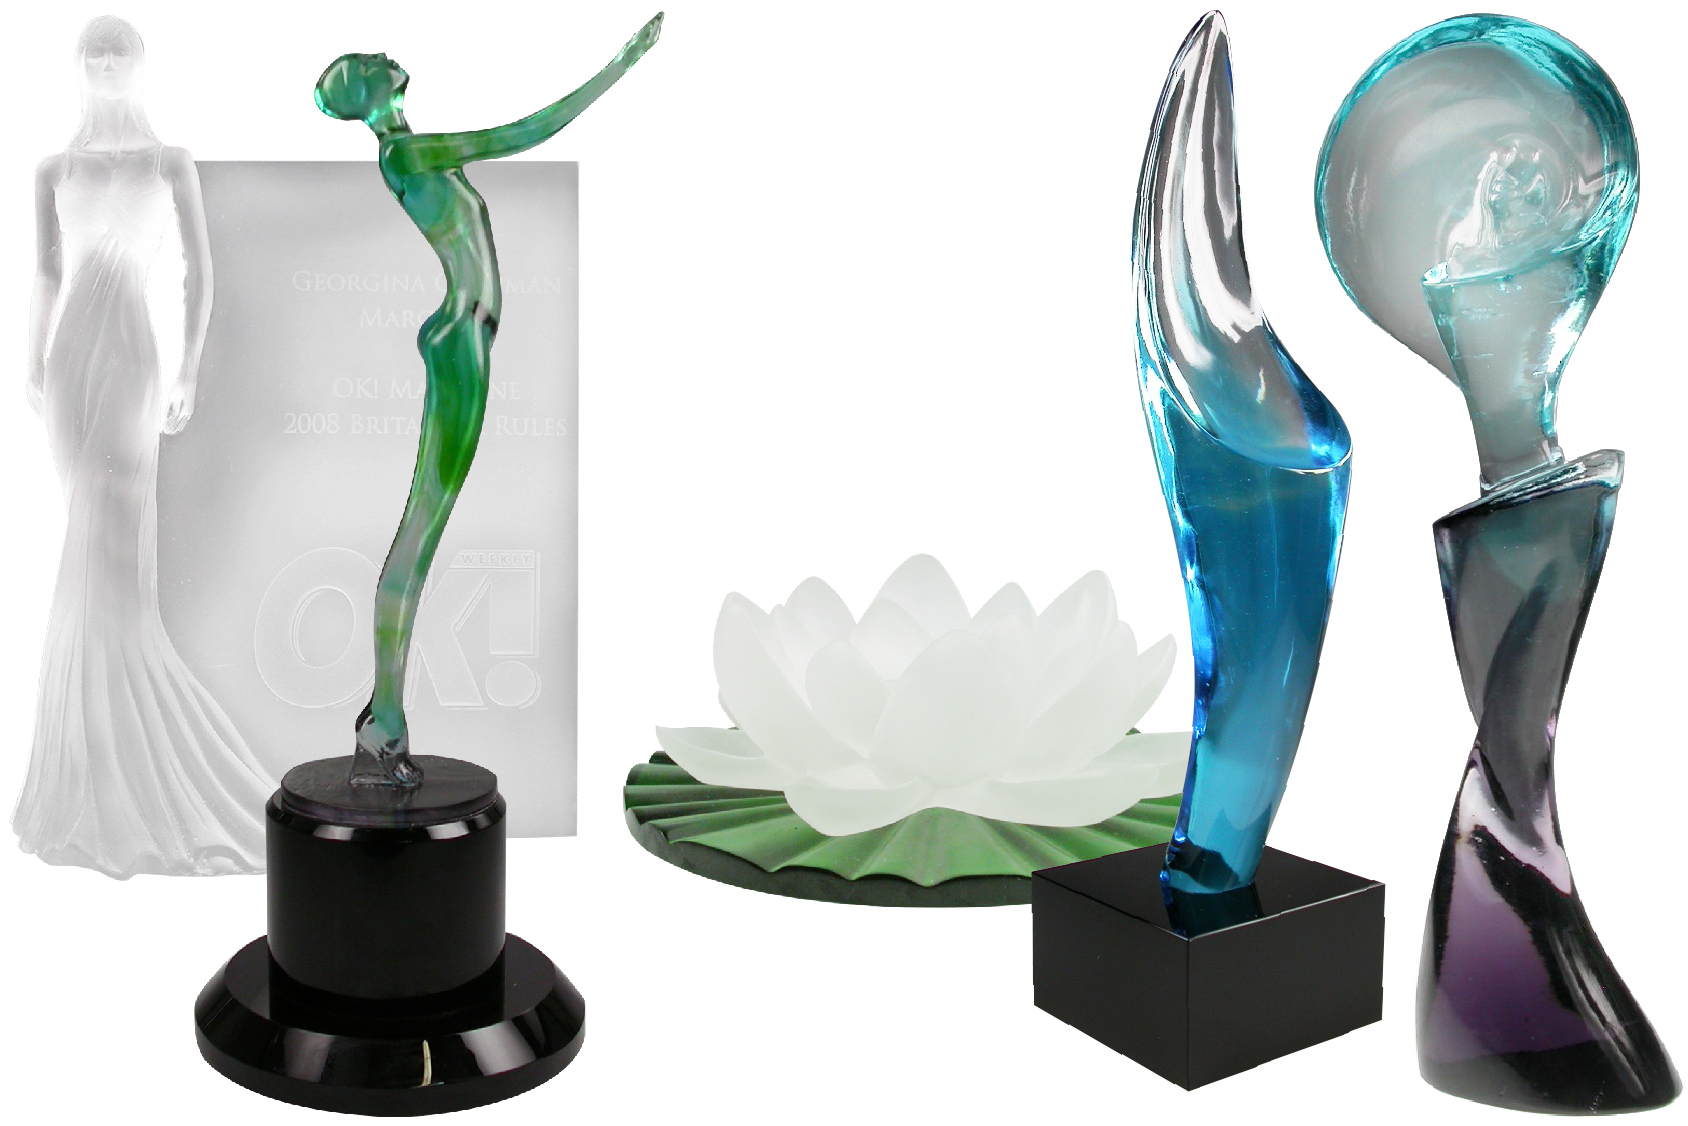 Five colorful pâte de verre sculptural trophies